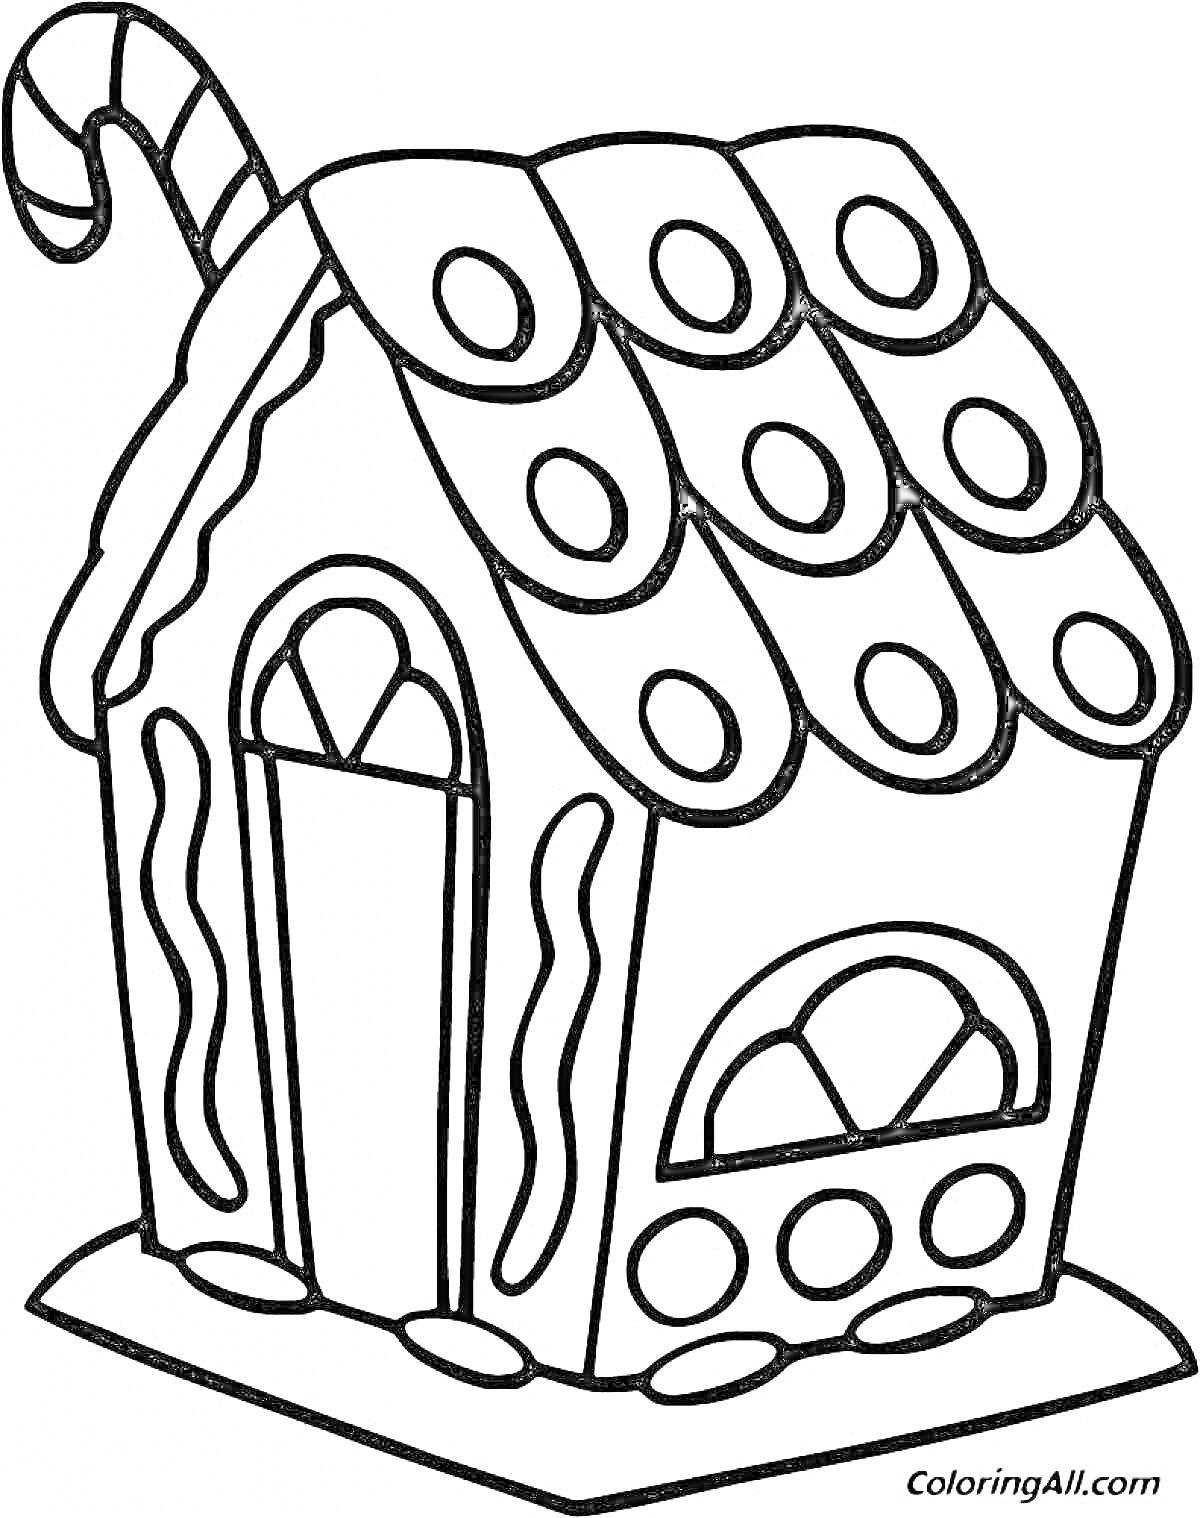 РаскраскаПряничный домик с конфетным тростником, окном и дверью, украшенный круглыми и волнистыми элементами